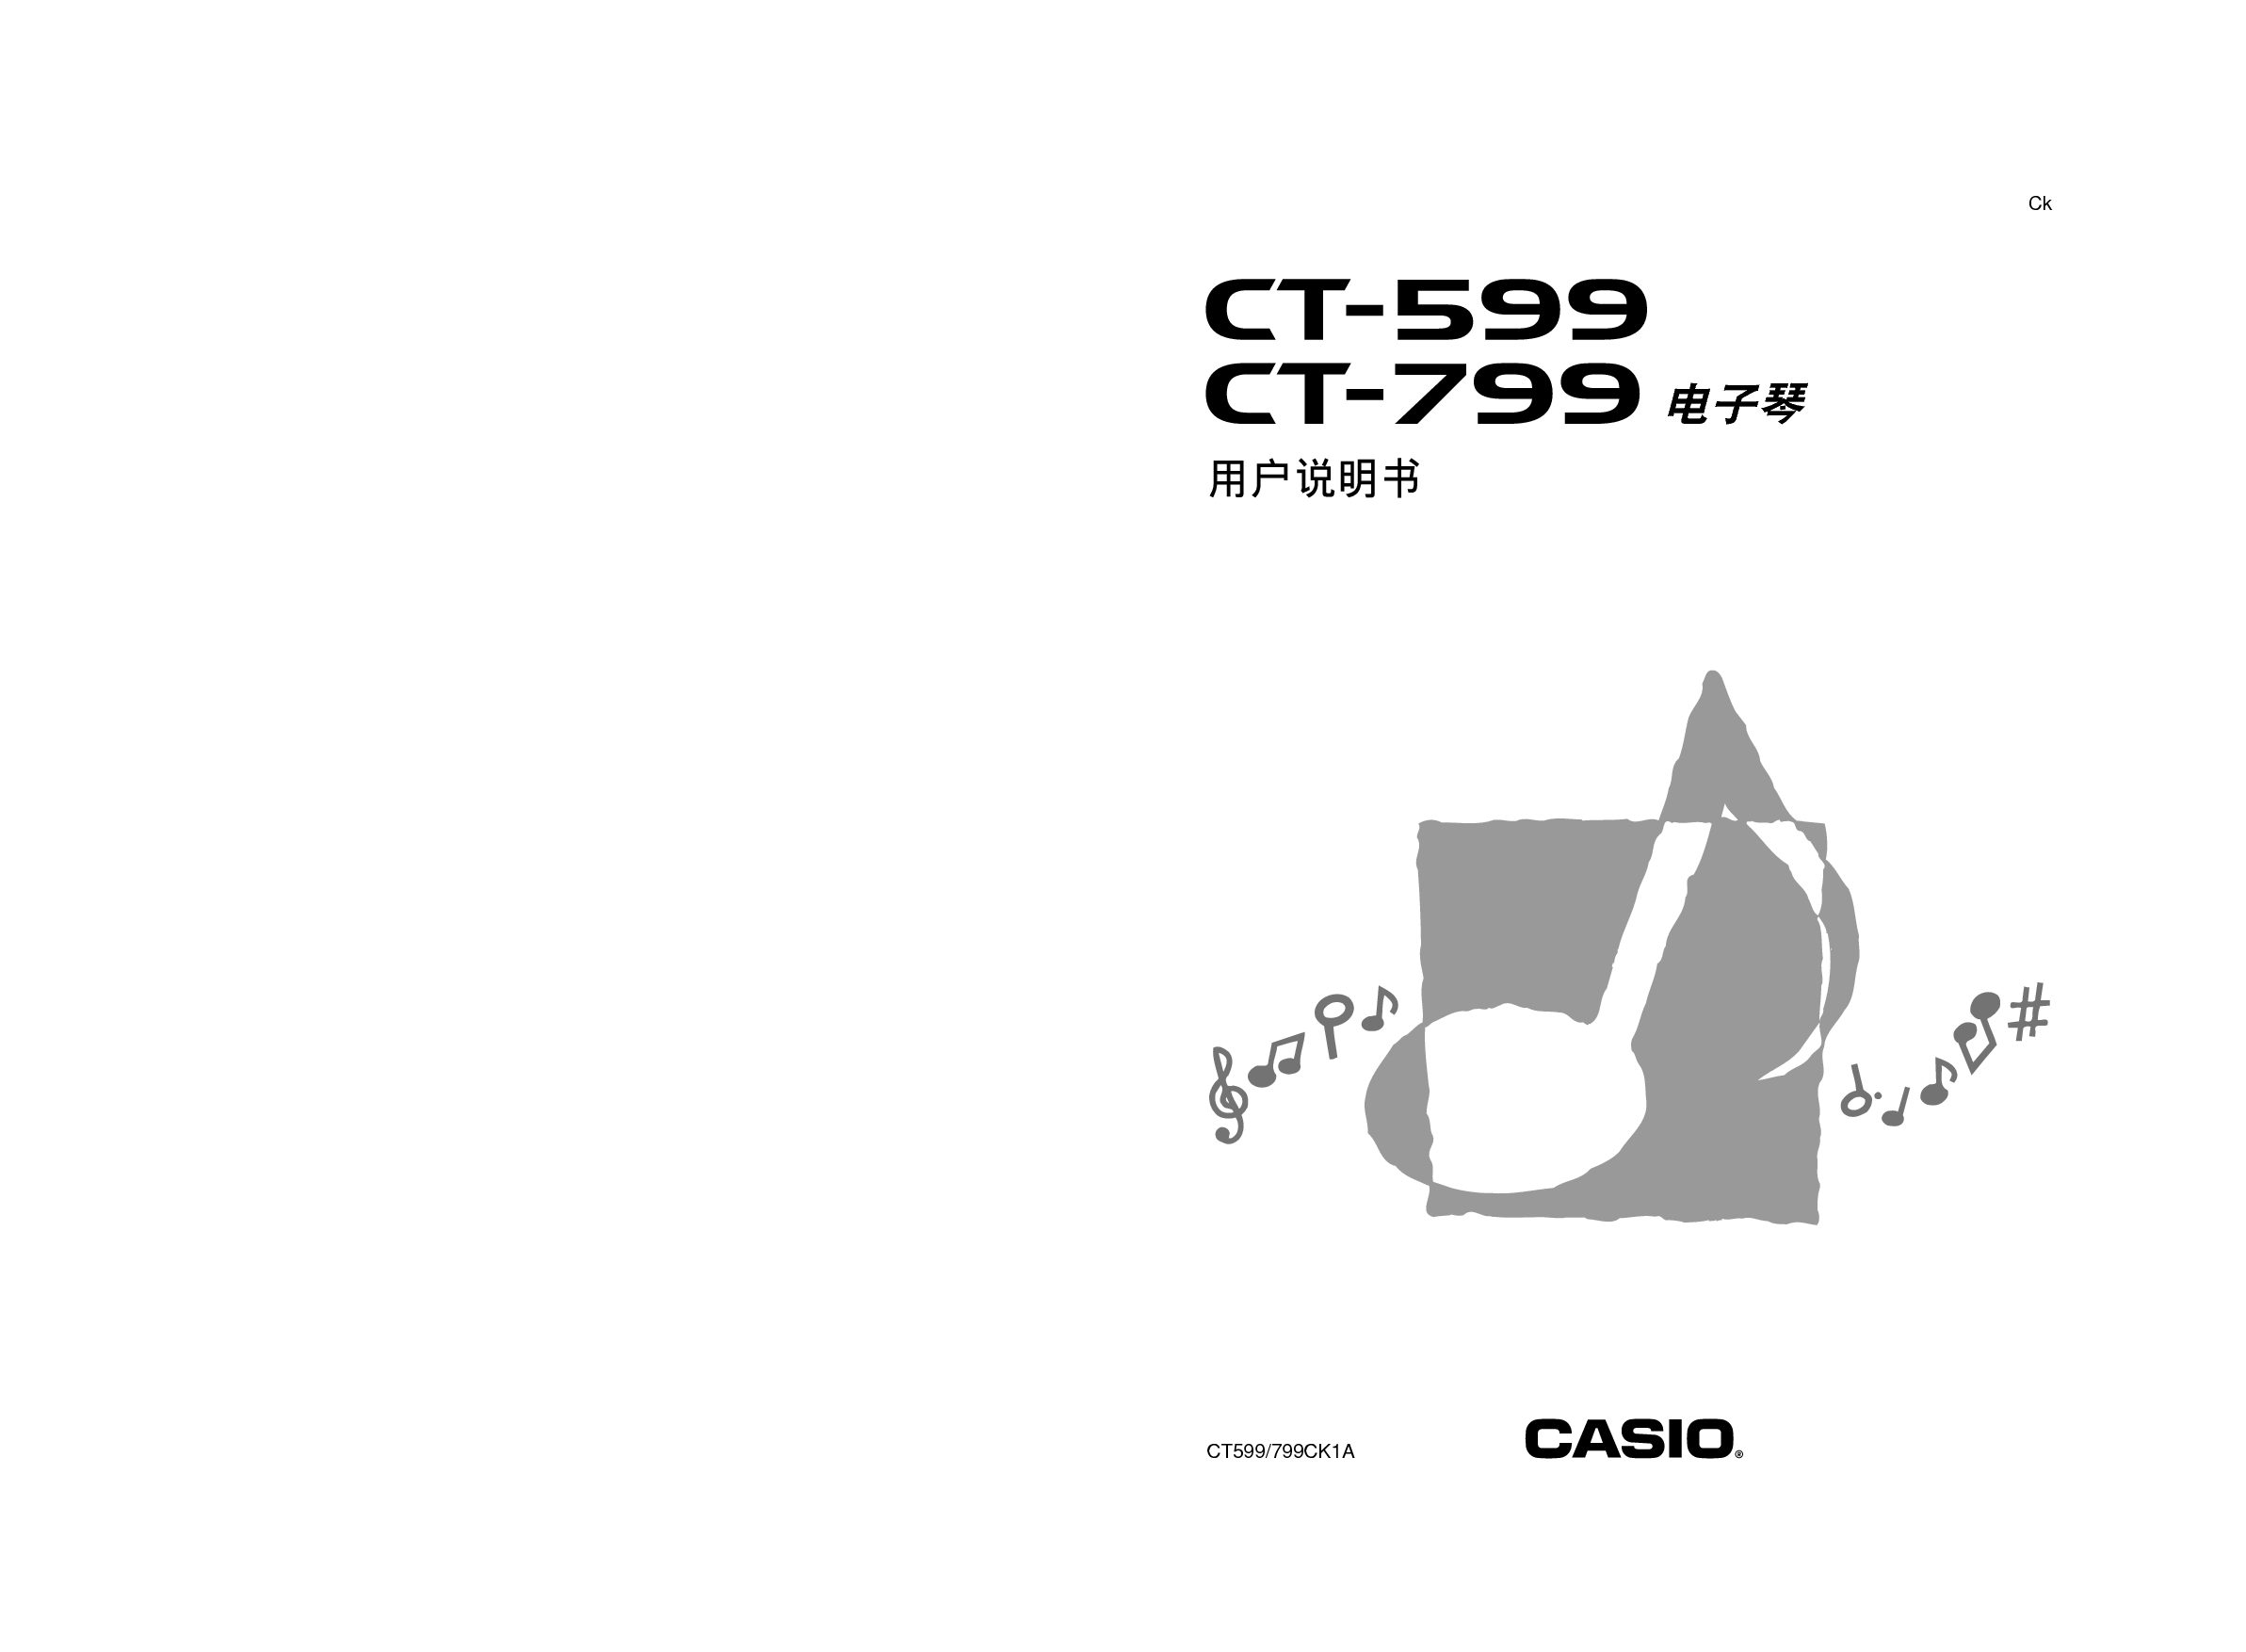 卡西欧 Casio CT-599 使用说明书 封面